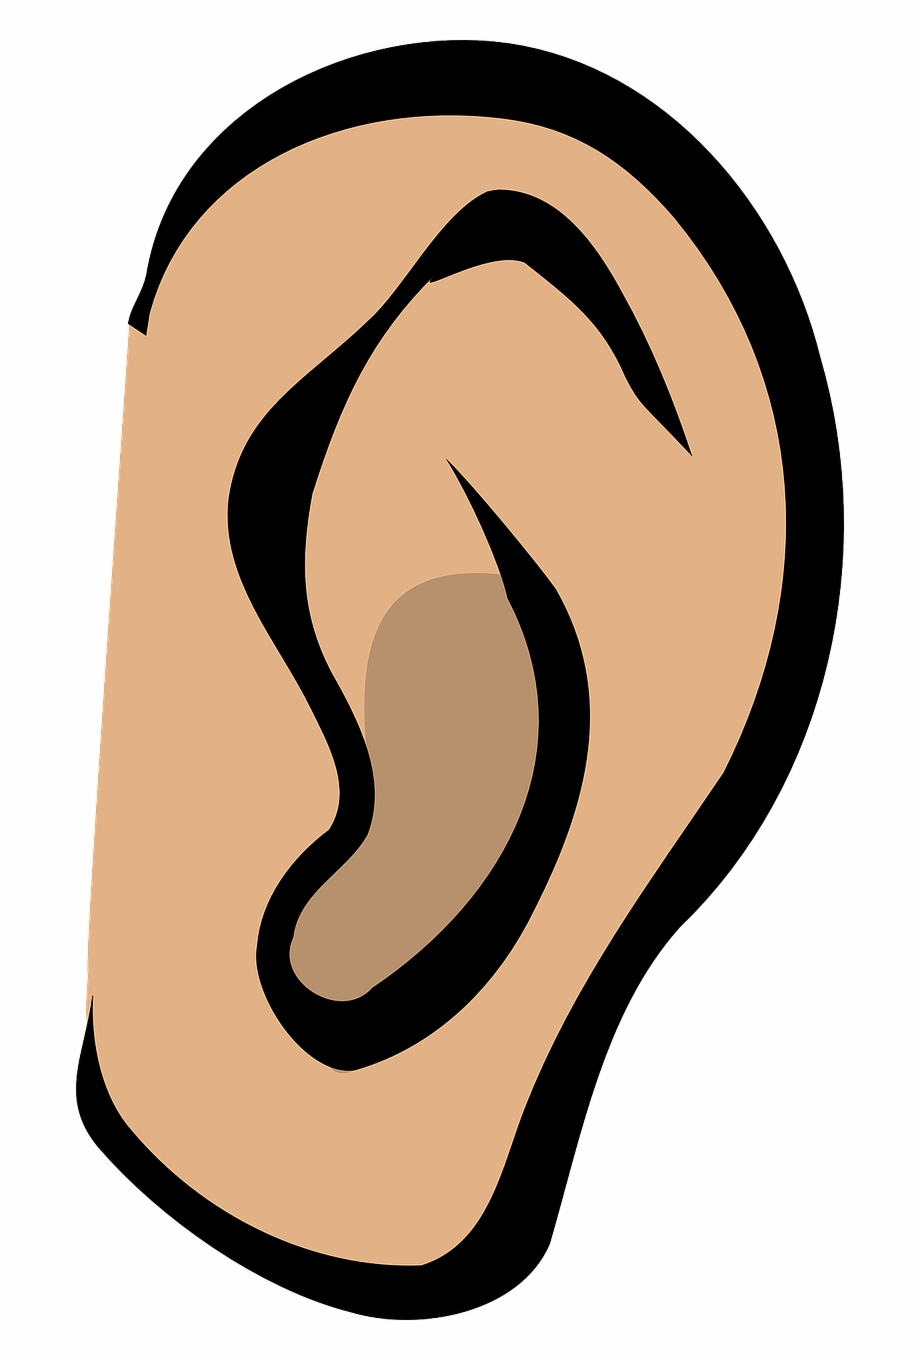 listening ears clipart for kids